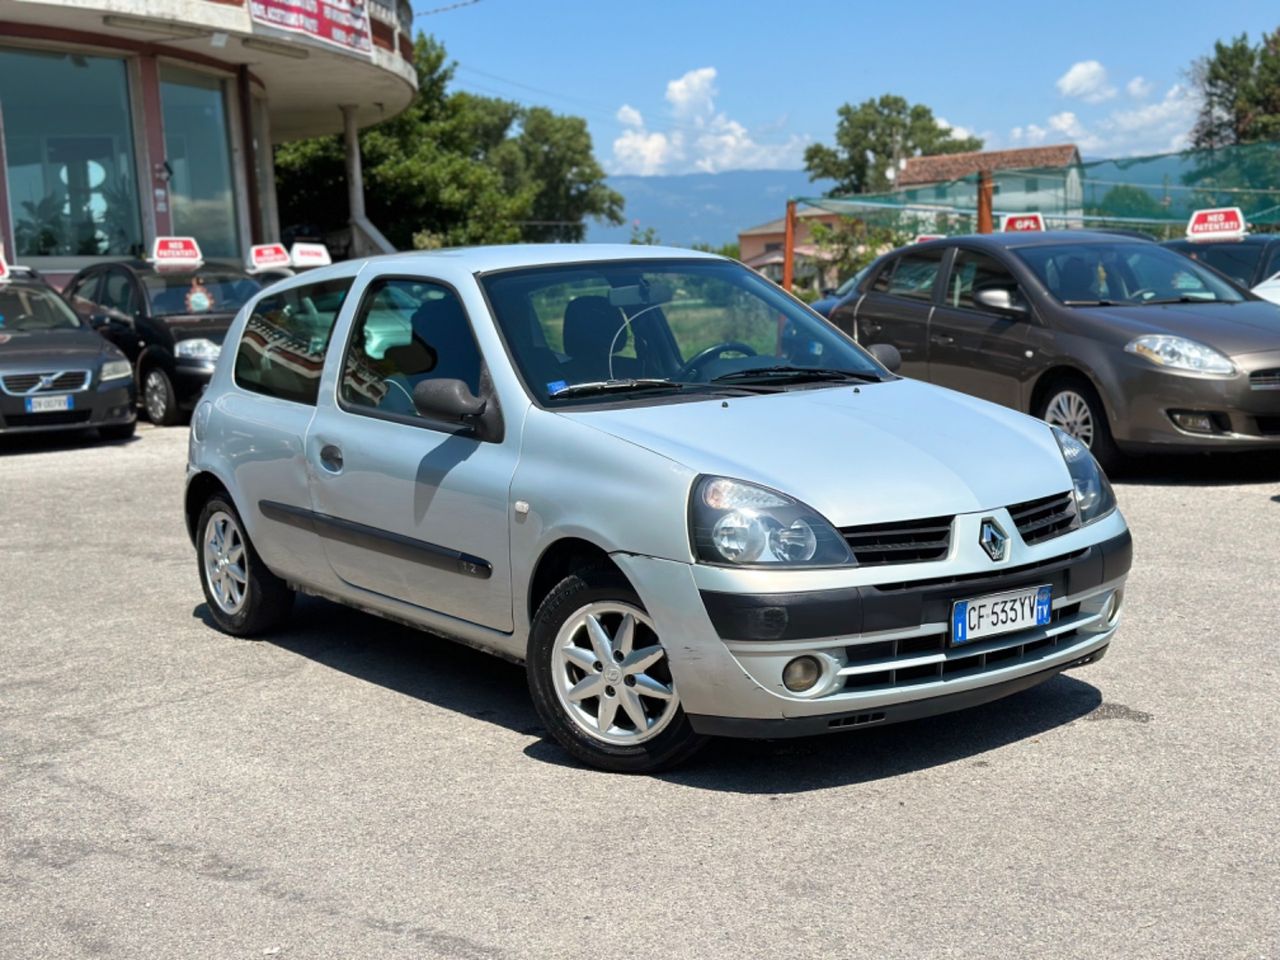 Renault Clio 1.2 16V benzina km 160,000 ok neopatentati